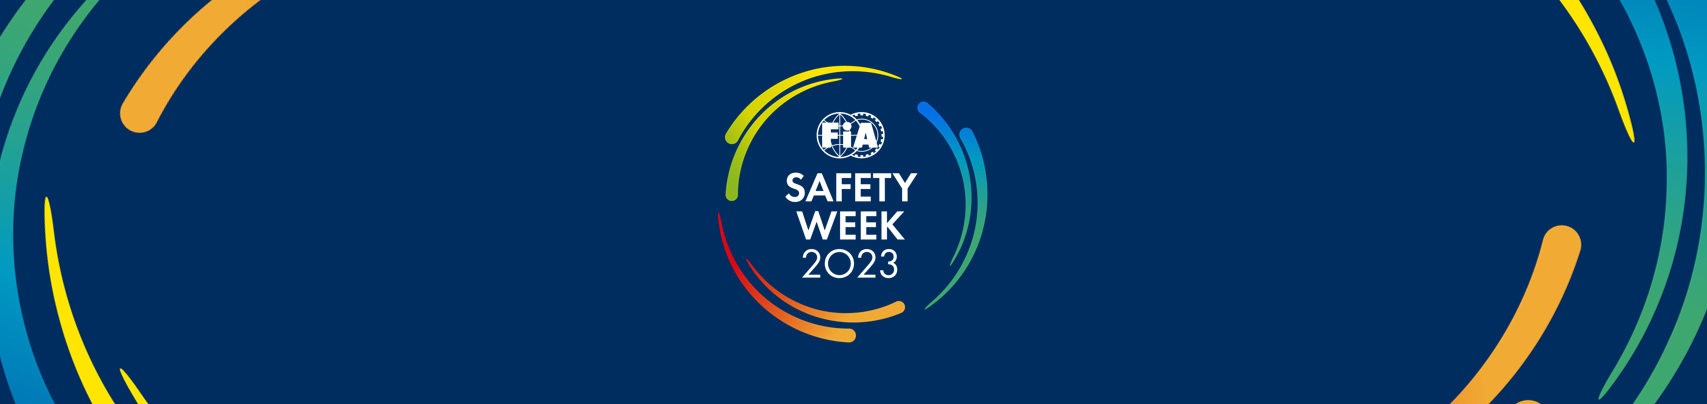 FIA Safety Week 2023